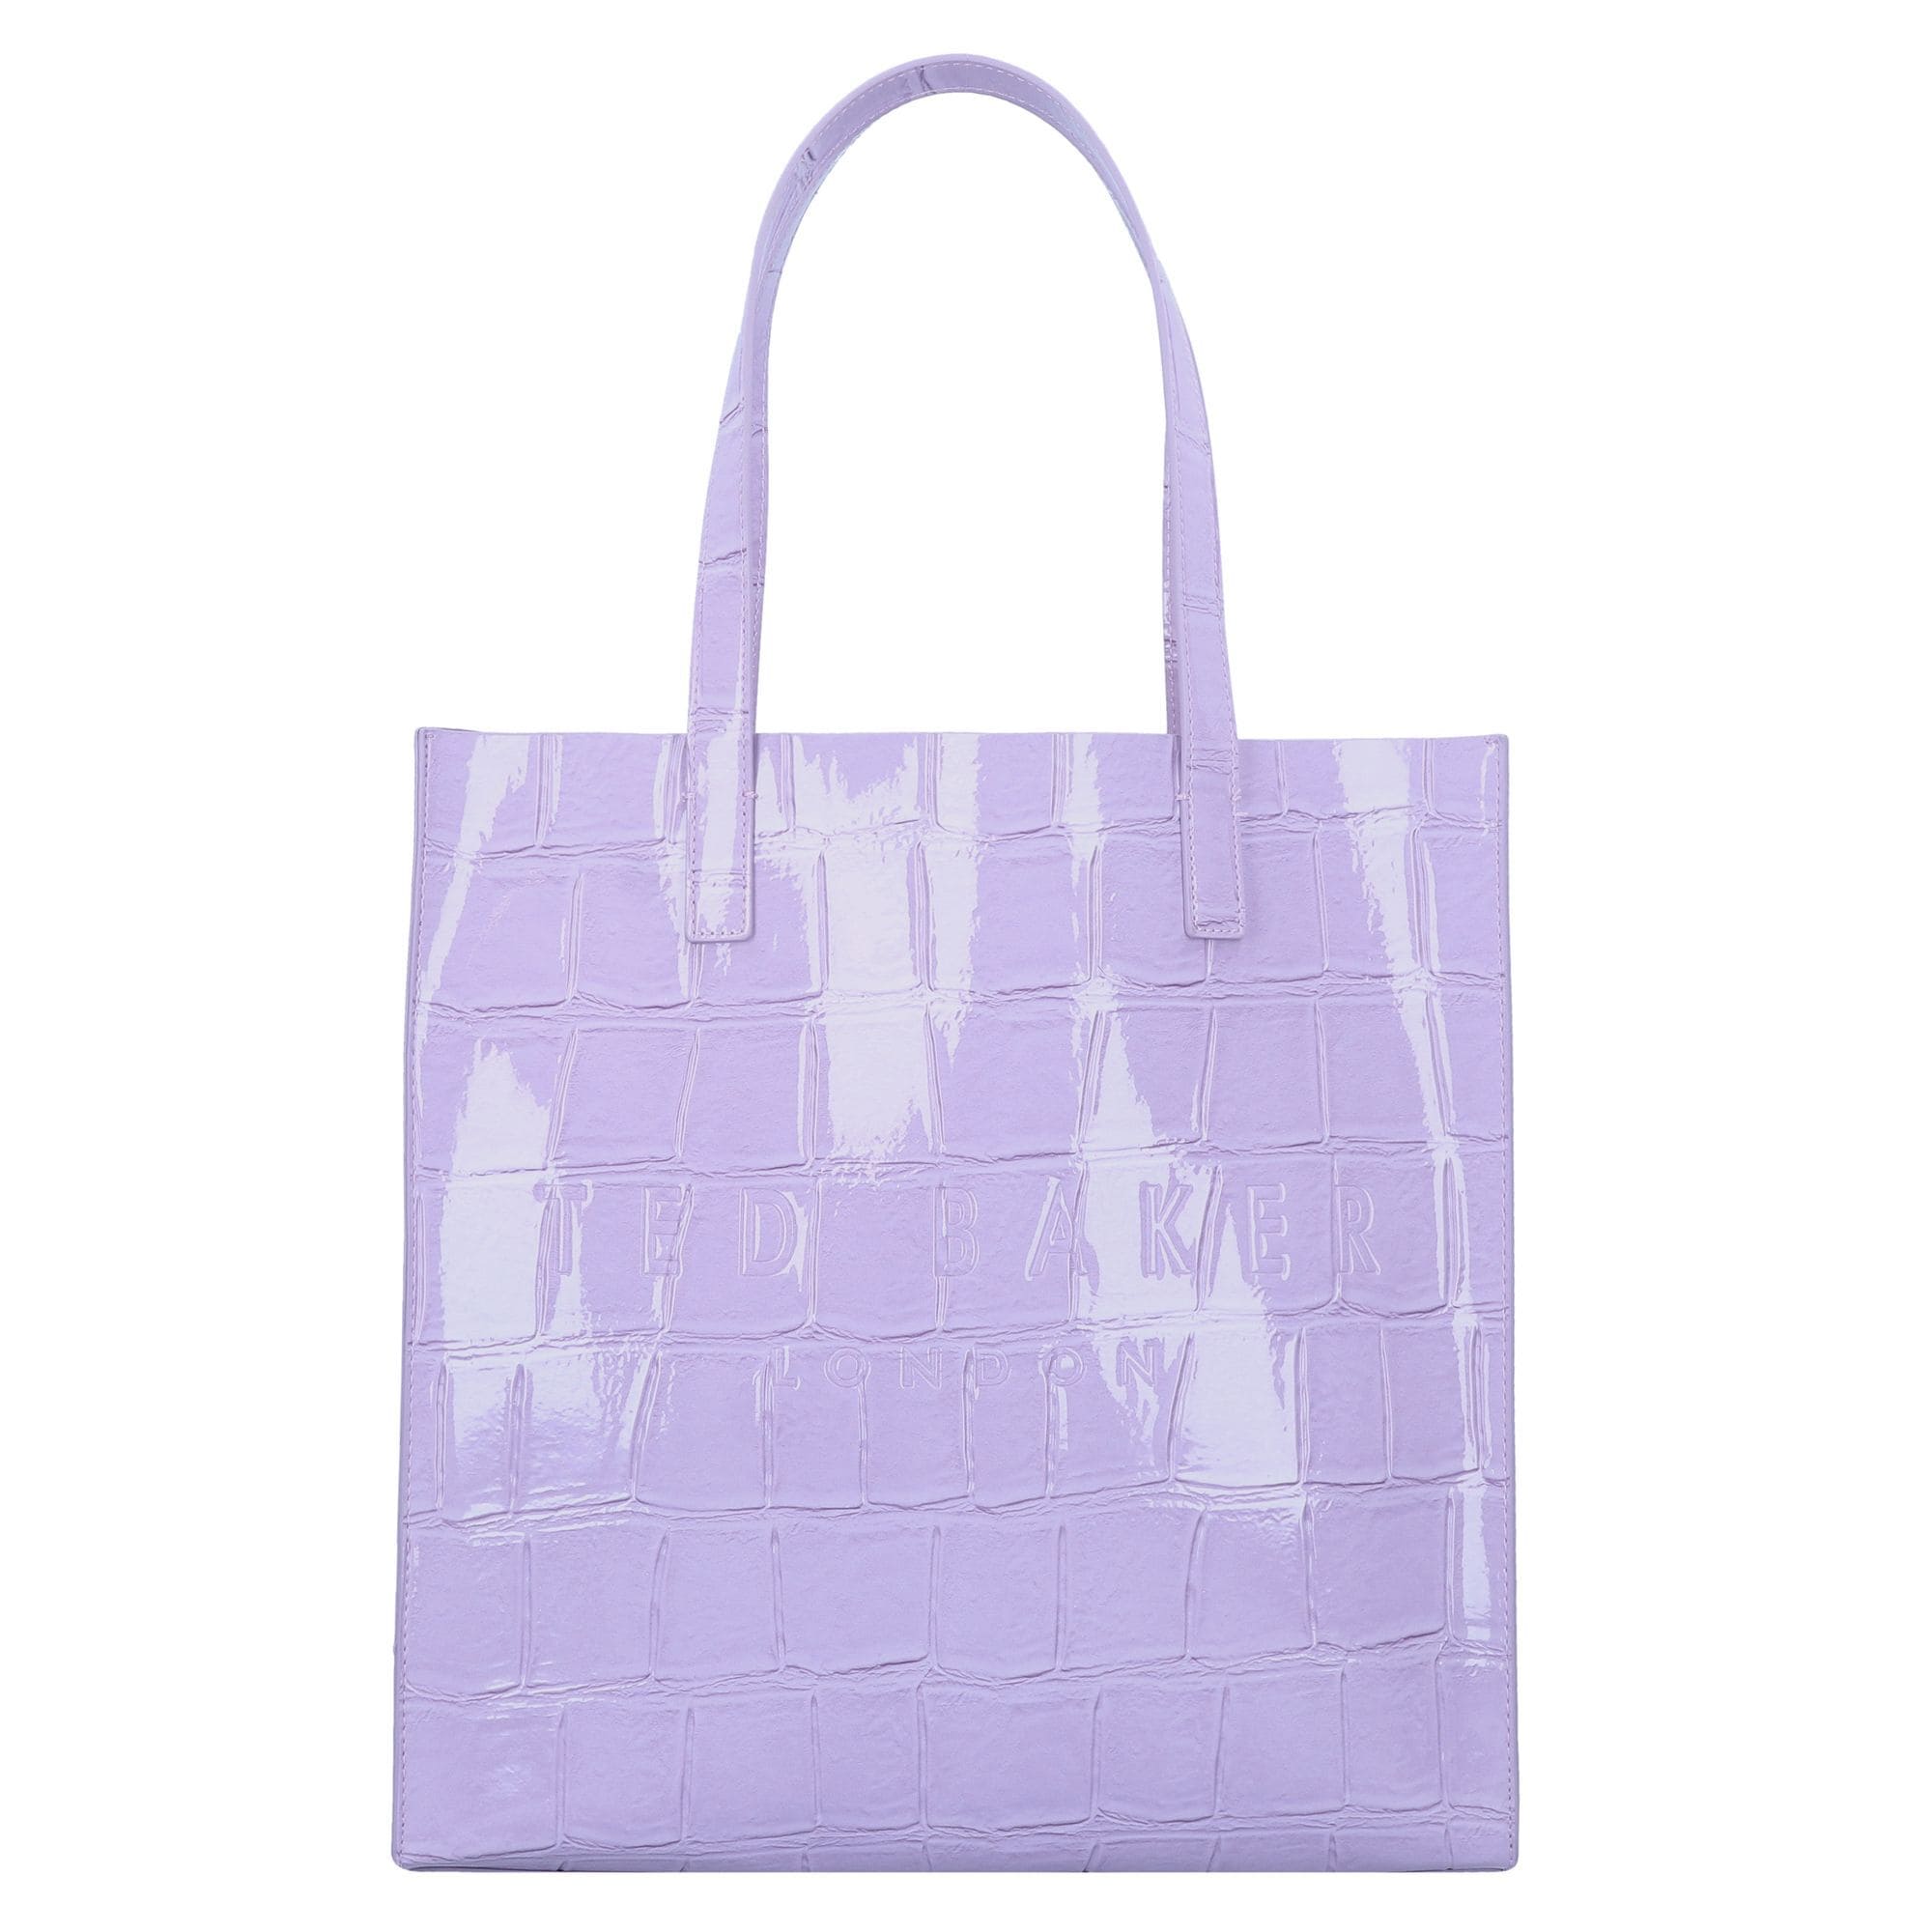 Ted Baker Pirkinių krepšys 'Croccon' šviesiai violetinė Išpardavimas-Ted Baker 1